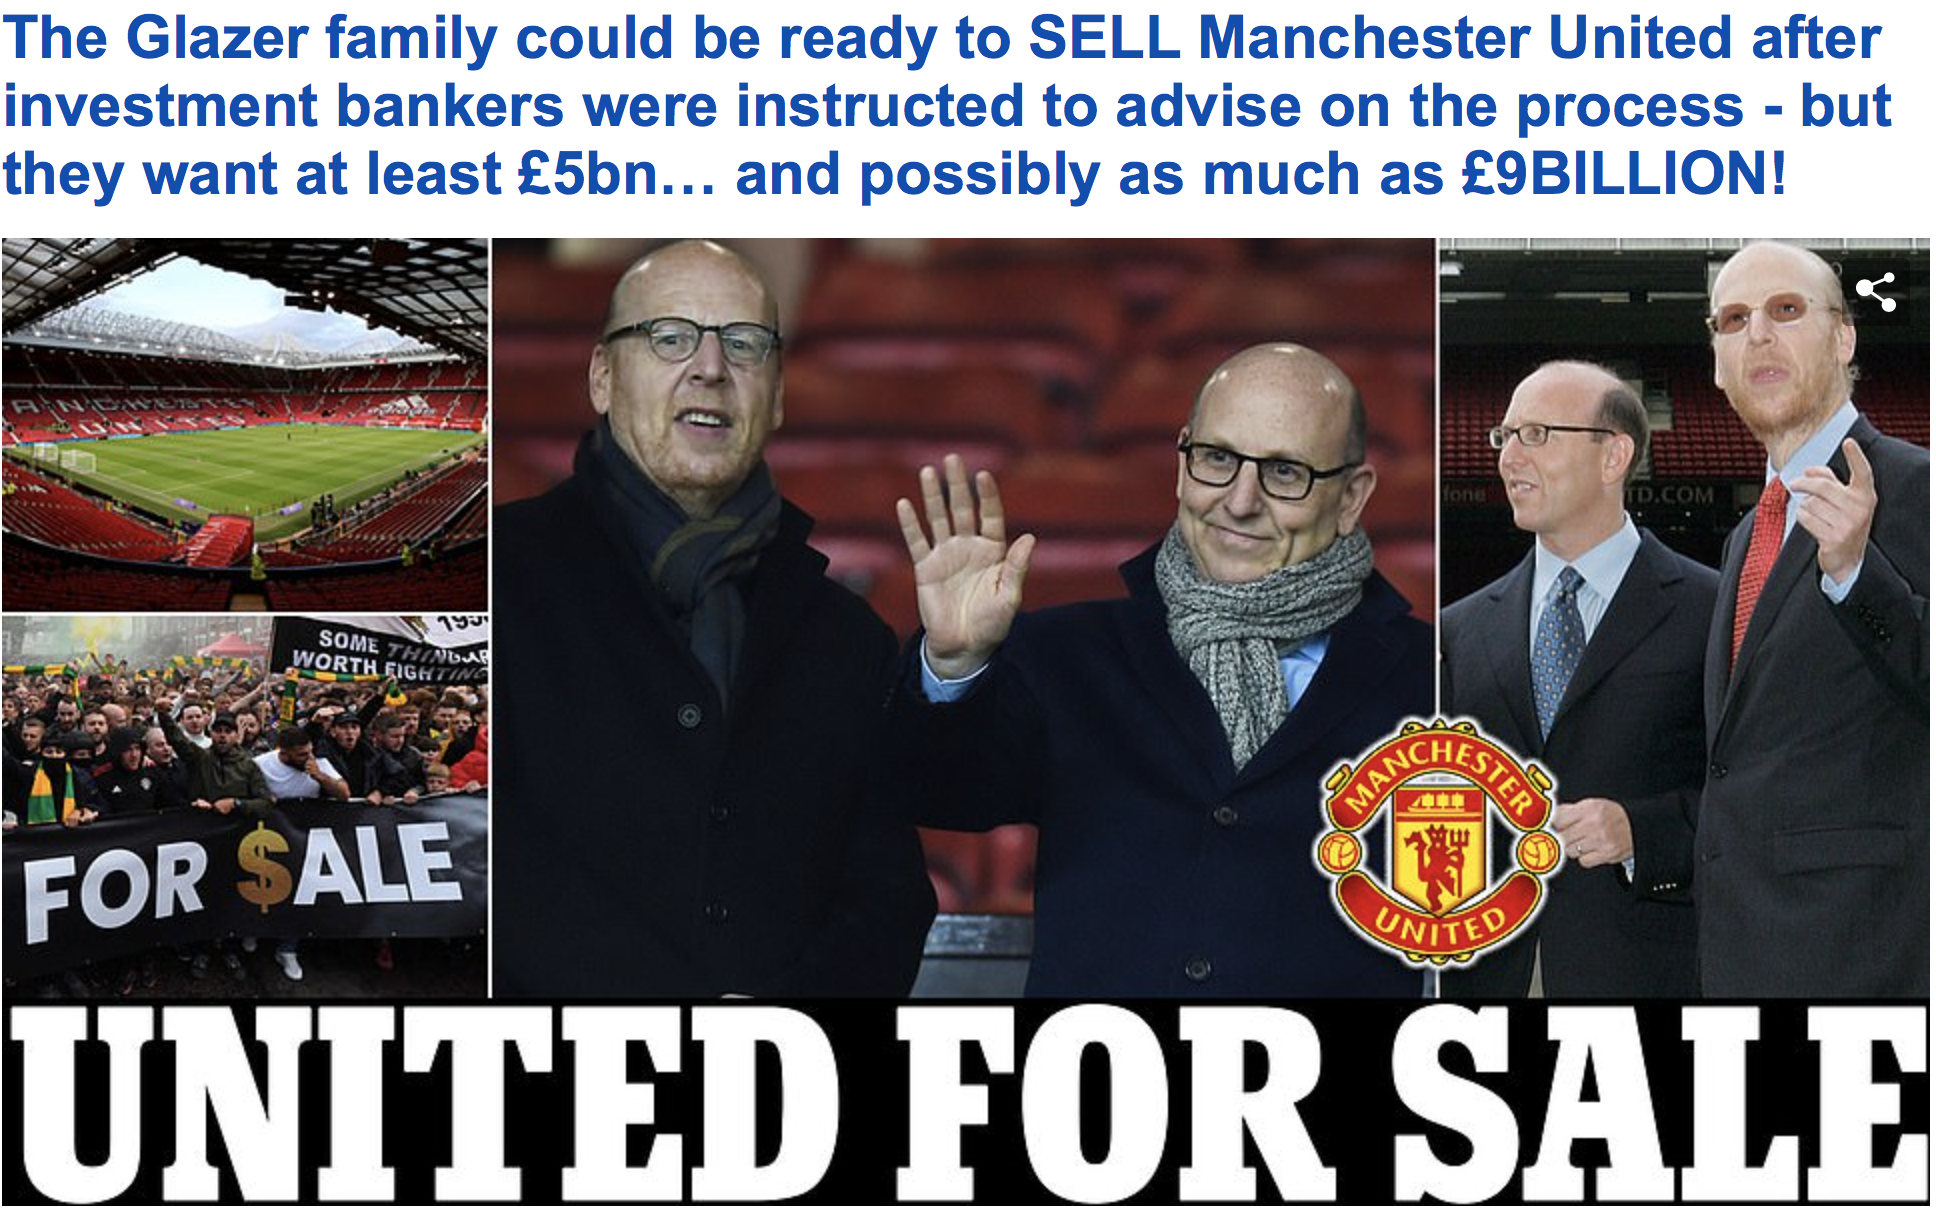 Nhà Glazer rao bán Man United giá 9 tỉ bảng - Ảnh 1.